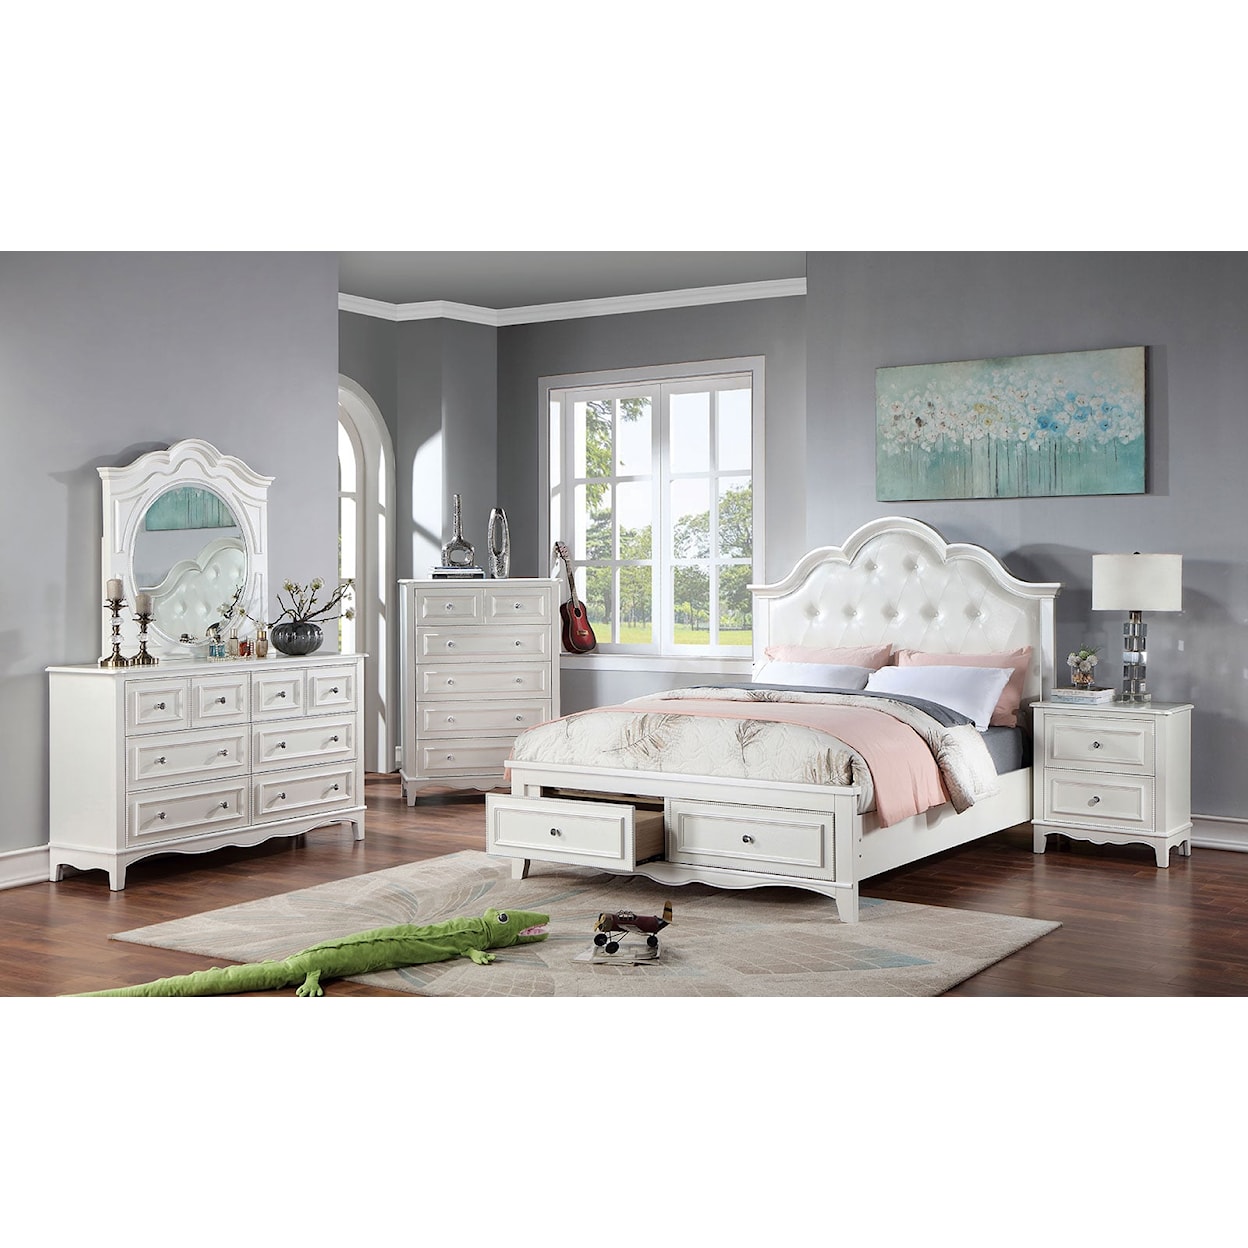 Furniture of America CADENCE 4-Piece Queen Bedroom Set